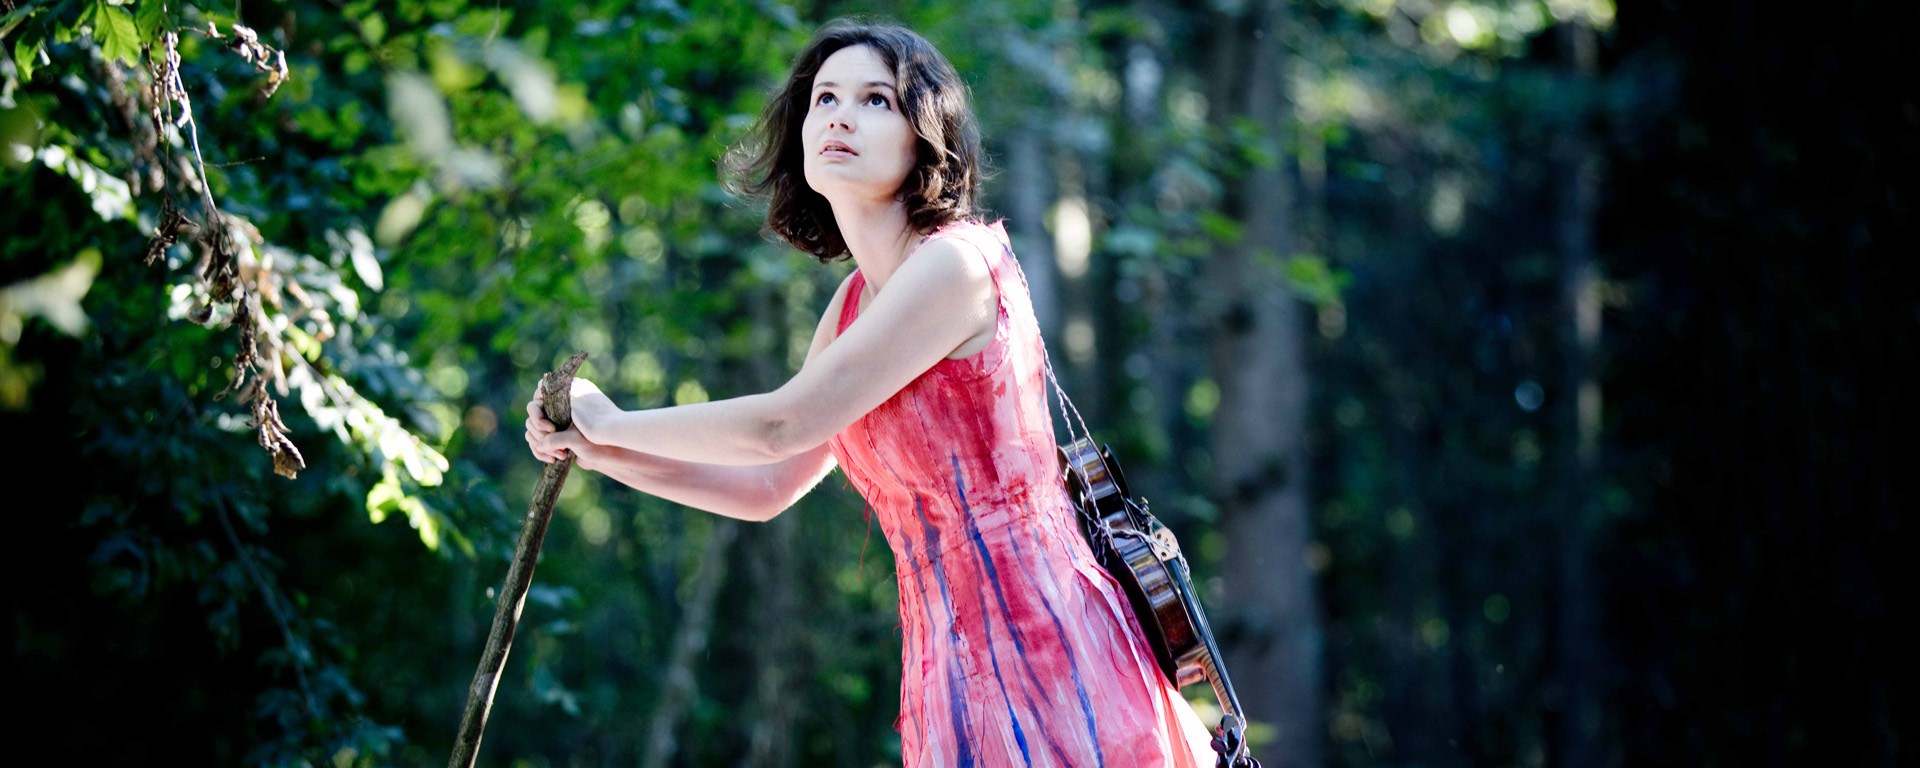 Patricia Kopatchinskaja im Wald. Die Geige trägt sie mit einer Kordel befestigt auf dem Rücken.